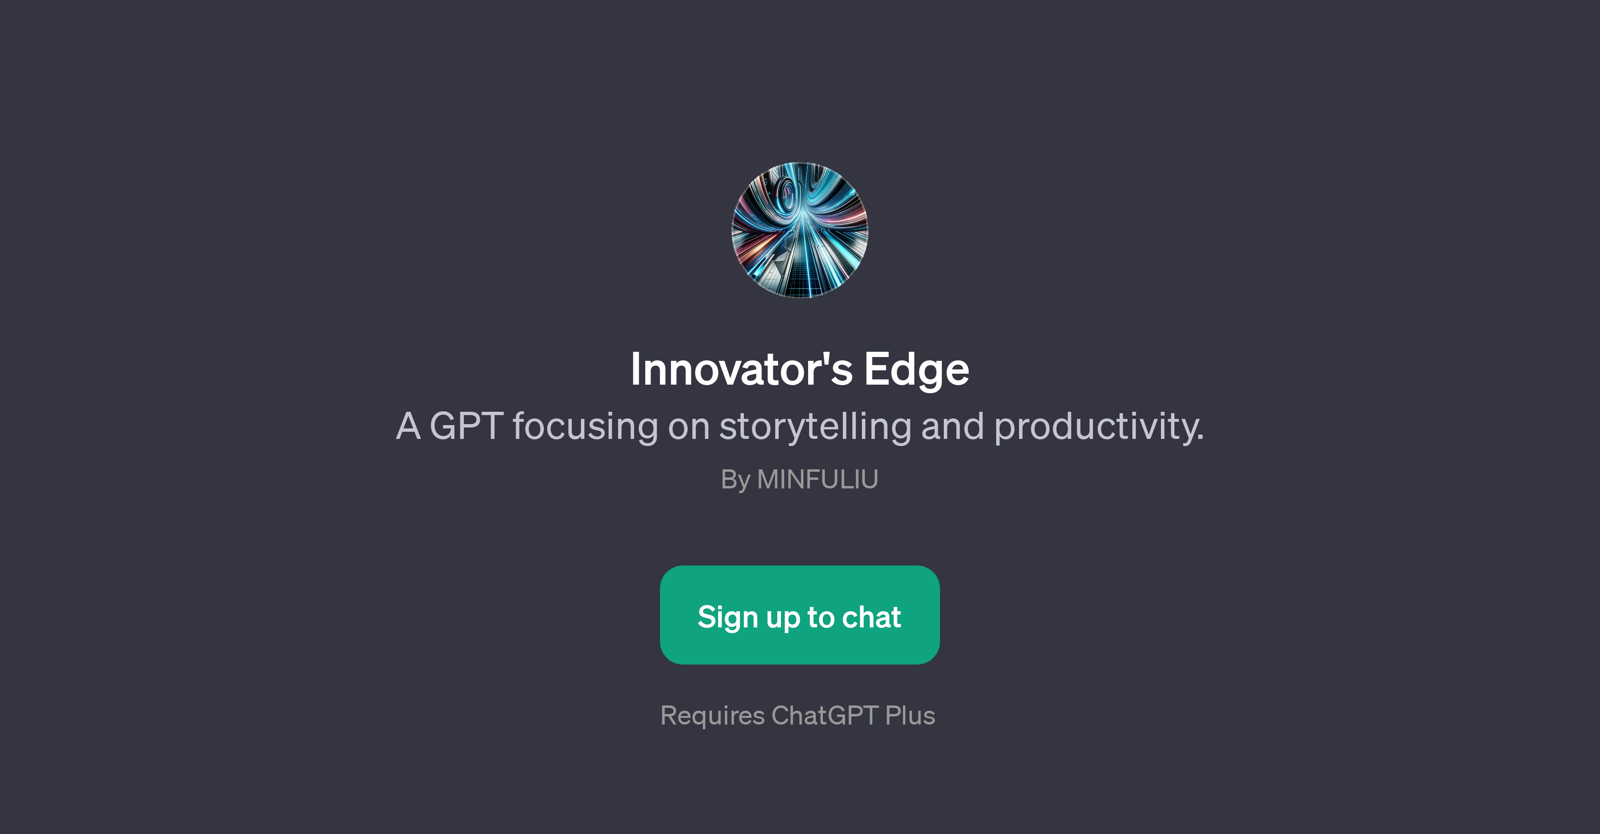 Innovator's Edge website